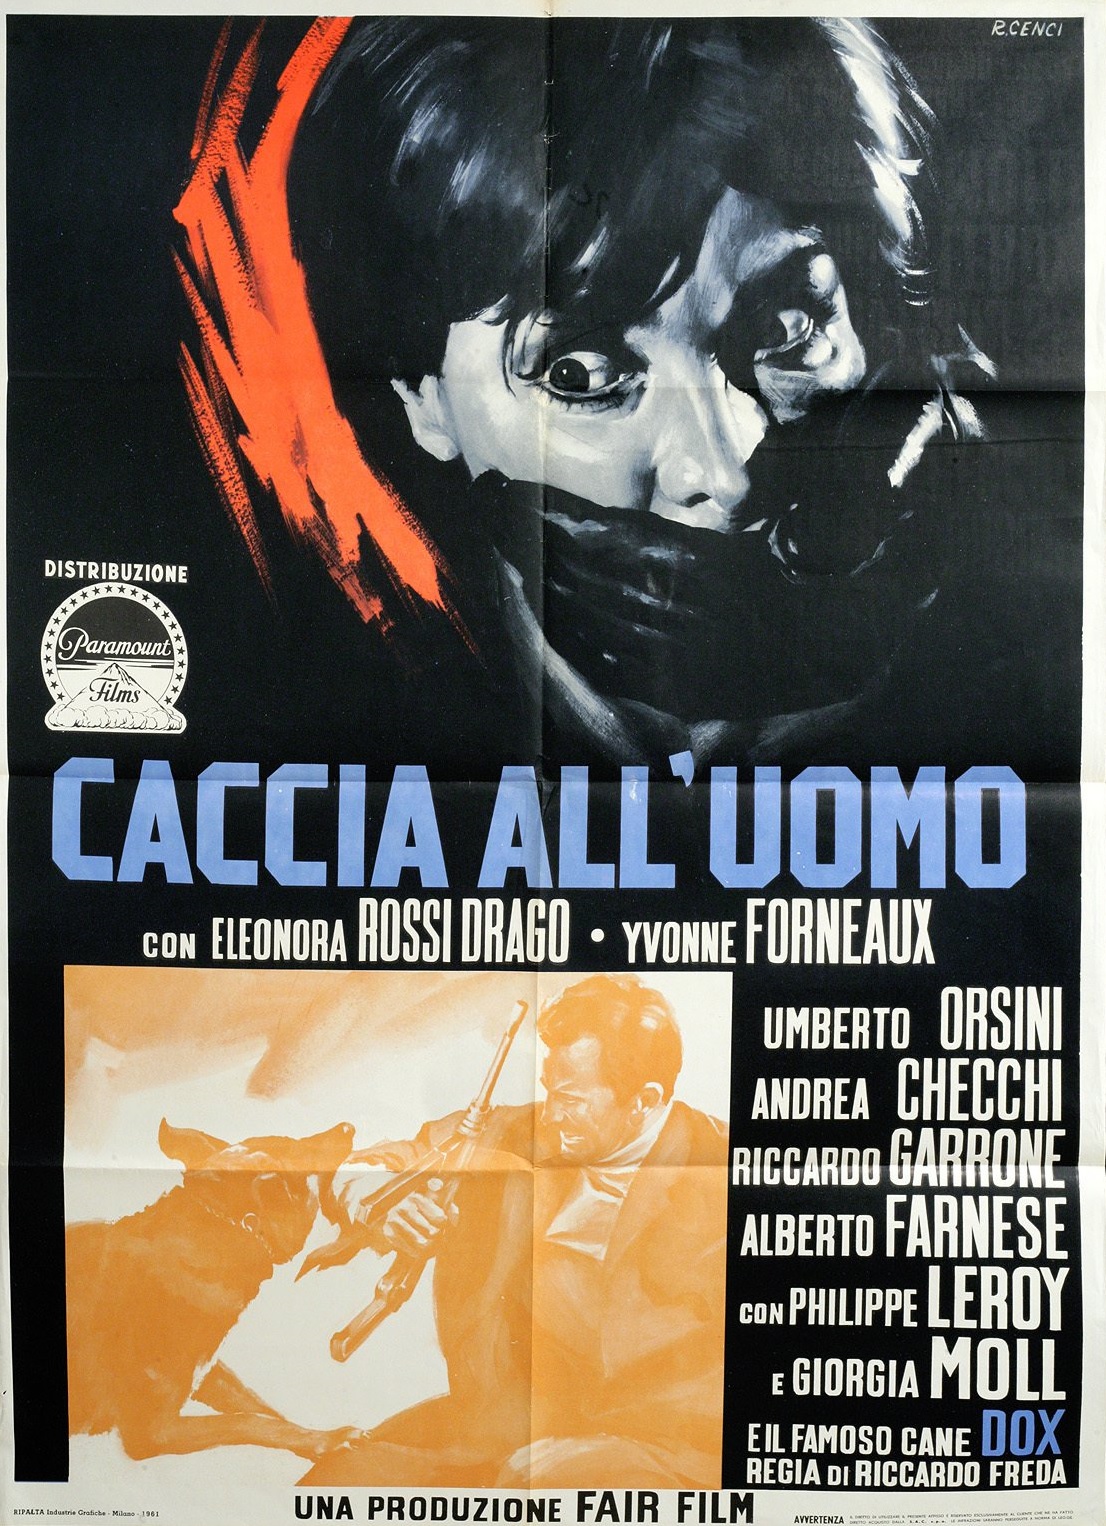 Caccia all'uomo (1961) Screenshot 2 